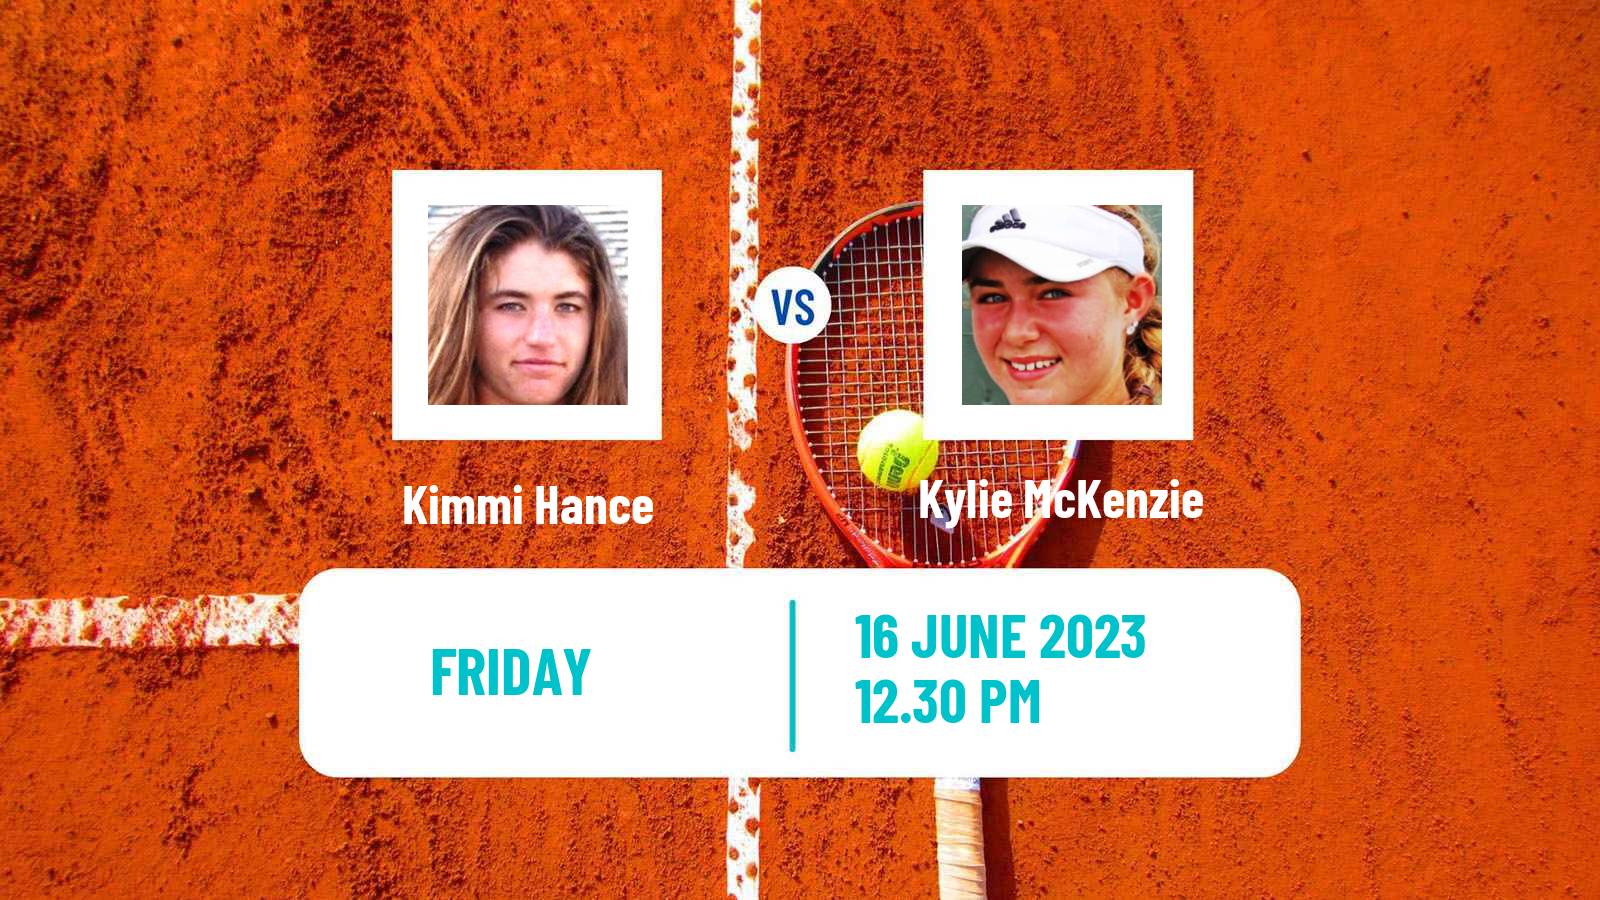 Tennis ITF W15 San Diego Ca 2 Women Kimmi Hance - Kylie McKenzie